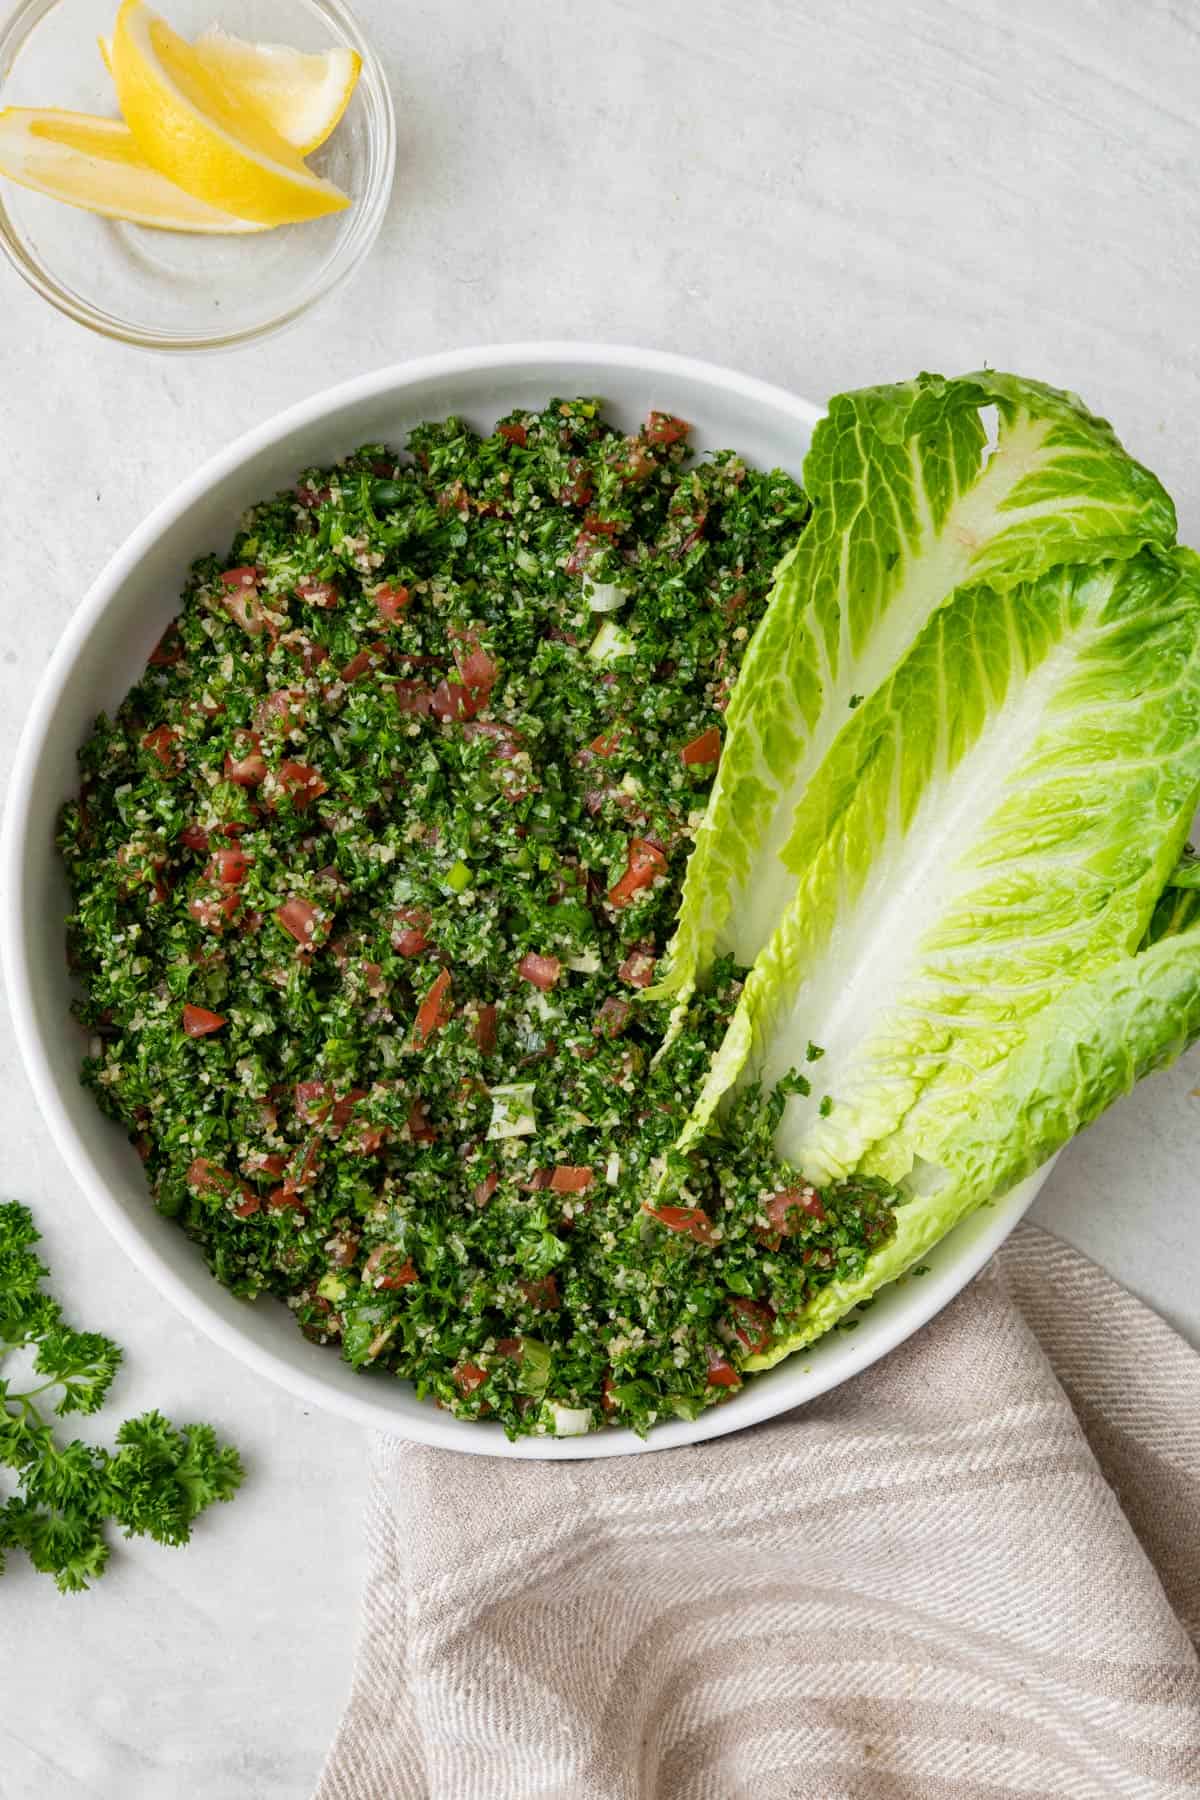 Bowl of Lebanese tabbouleh salad with romaine lettuce leaves tucked inside bowl for serving.